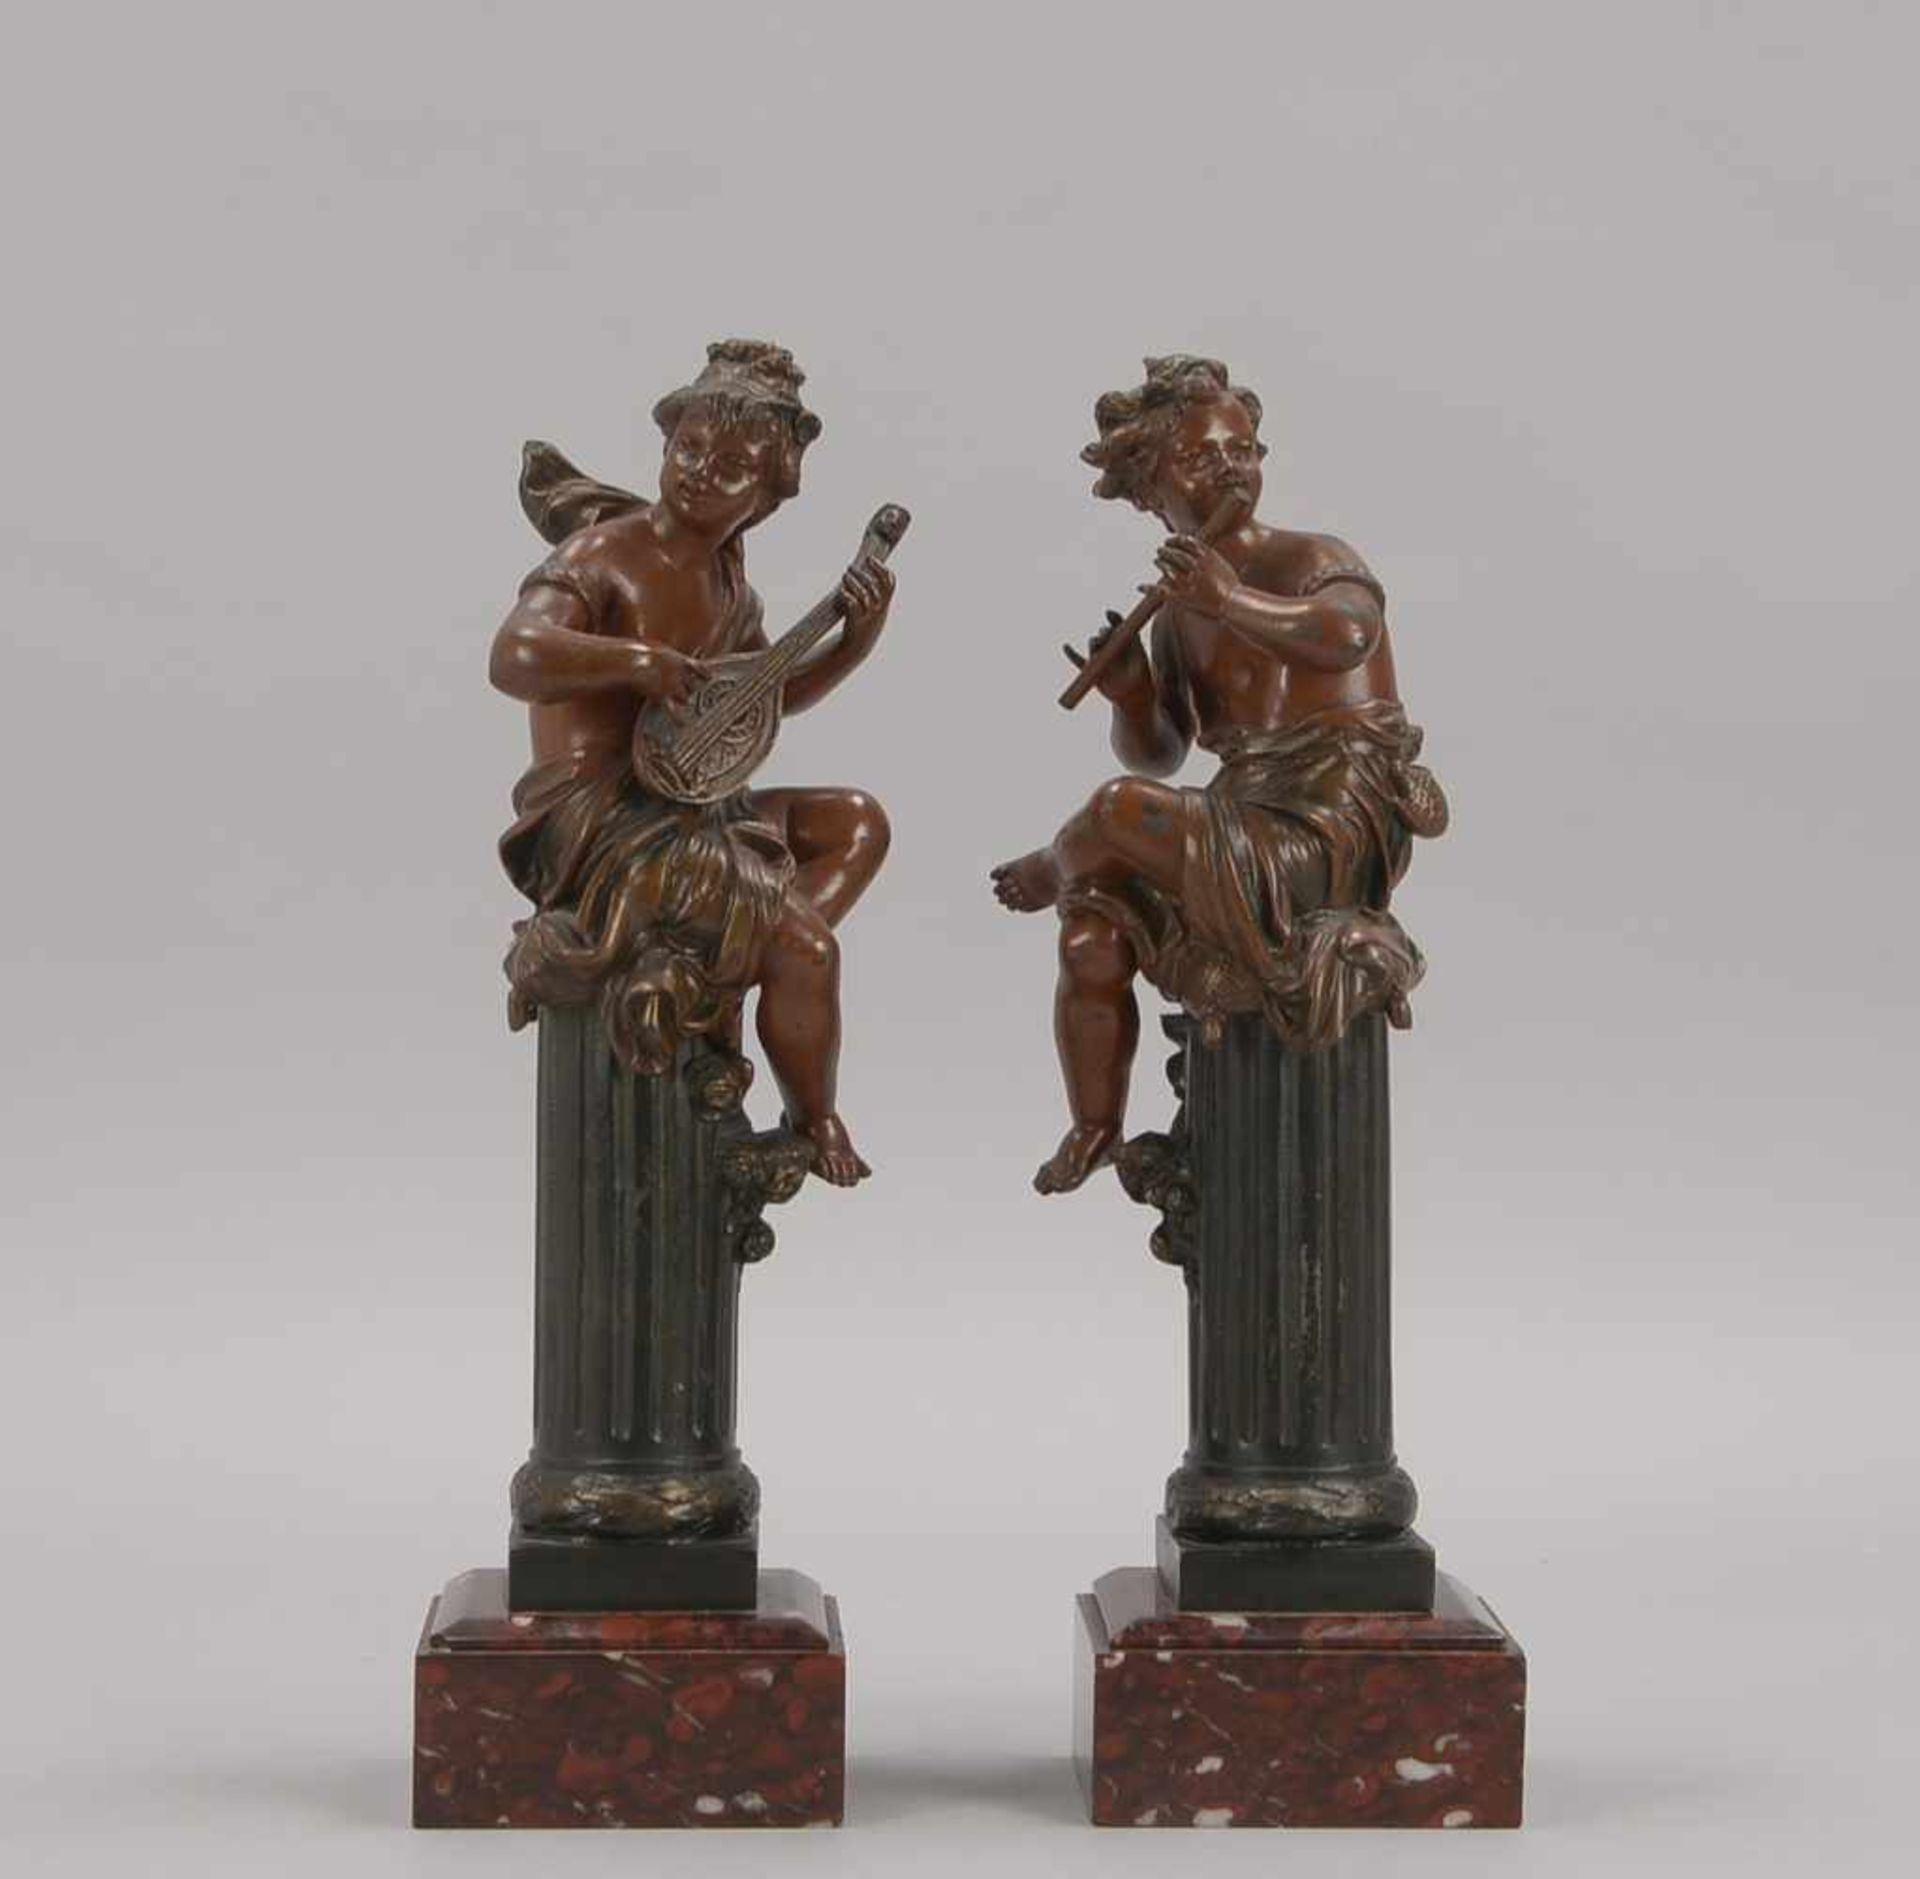 Paar Skulpturen, 'Musizierende Putti' (jeweils auf Säulen sitzend dargestellt), Grauguss